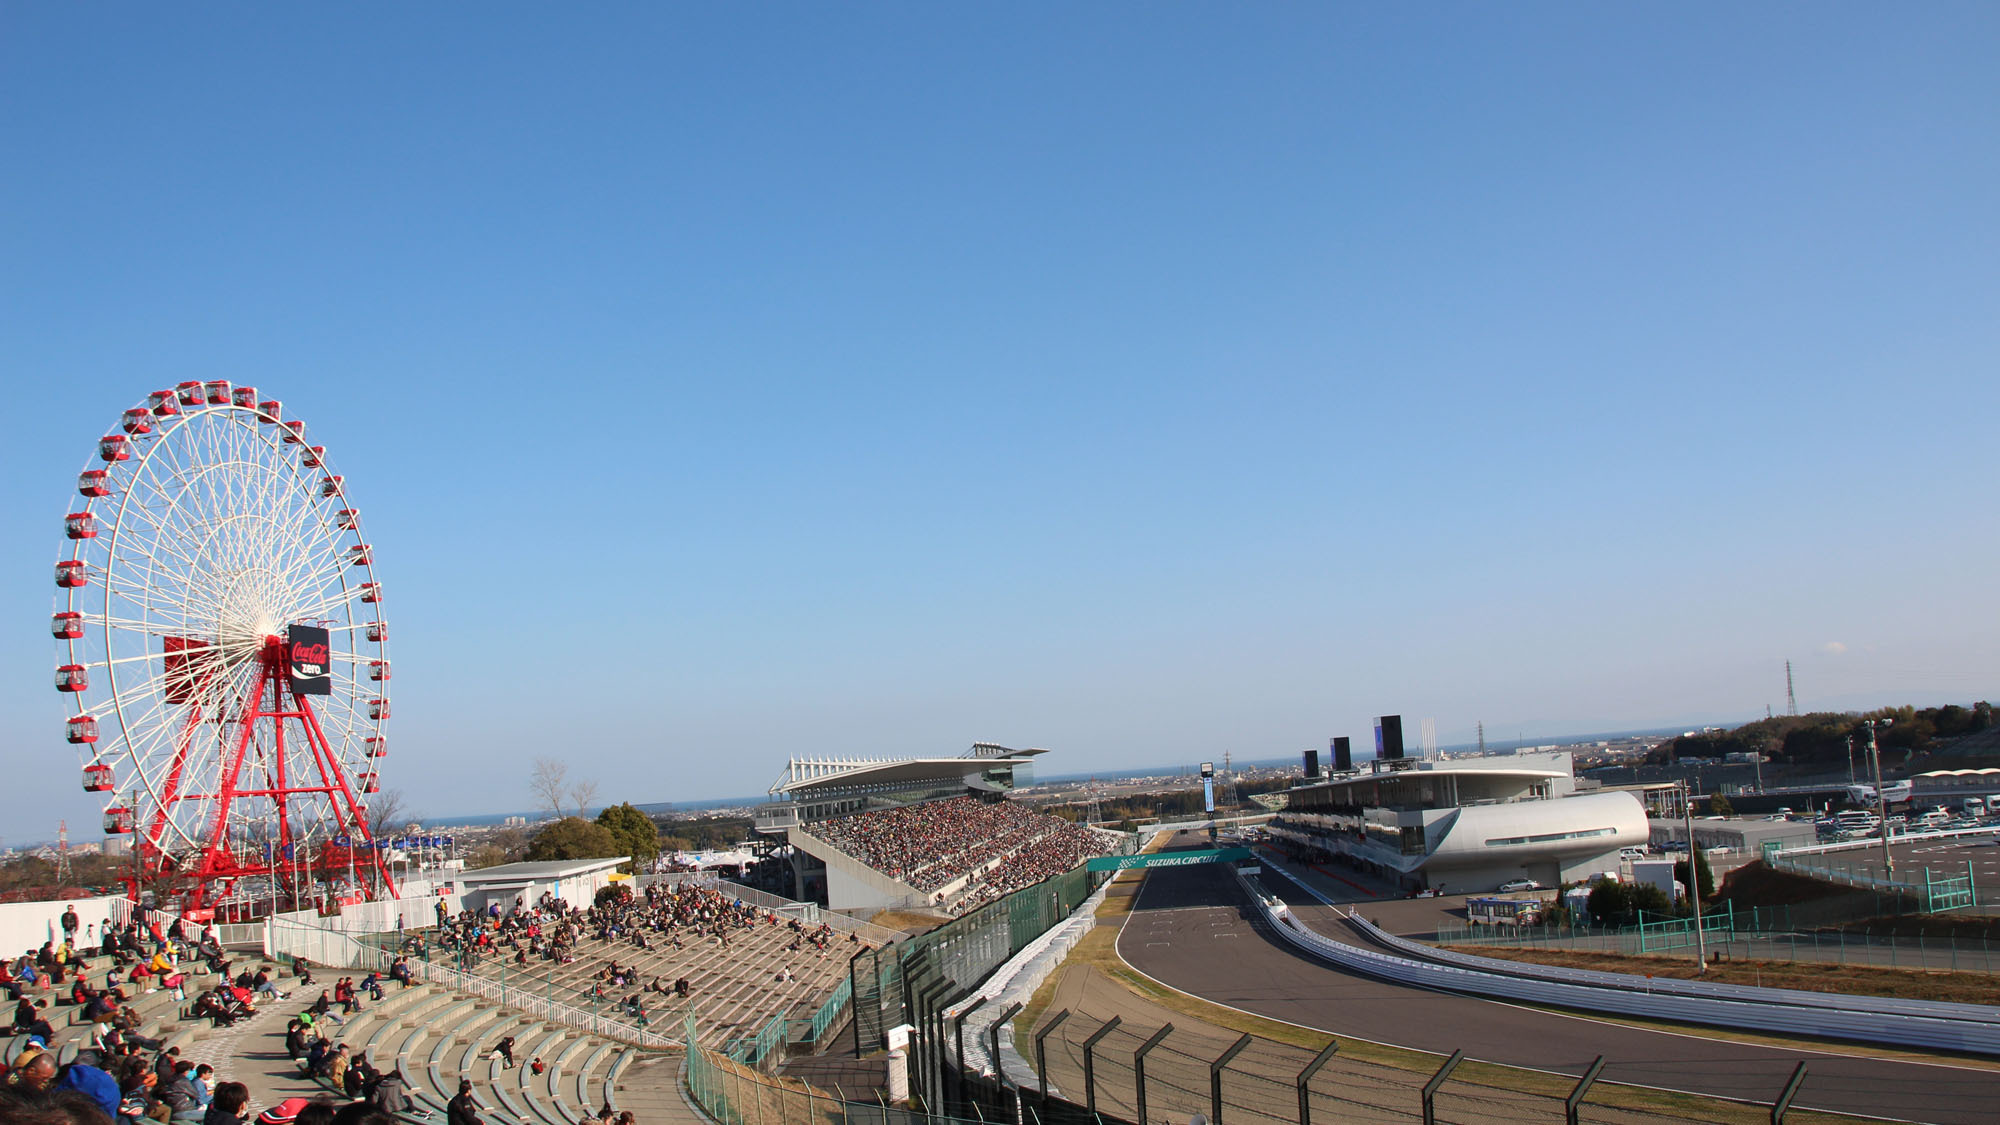 国際レーシングコースF1日本GPや鈴鹿8耐が開催される「鈴鹿サーキット」へは、車で約15分です。